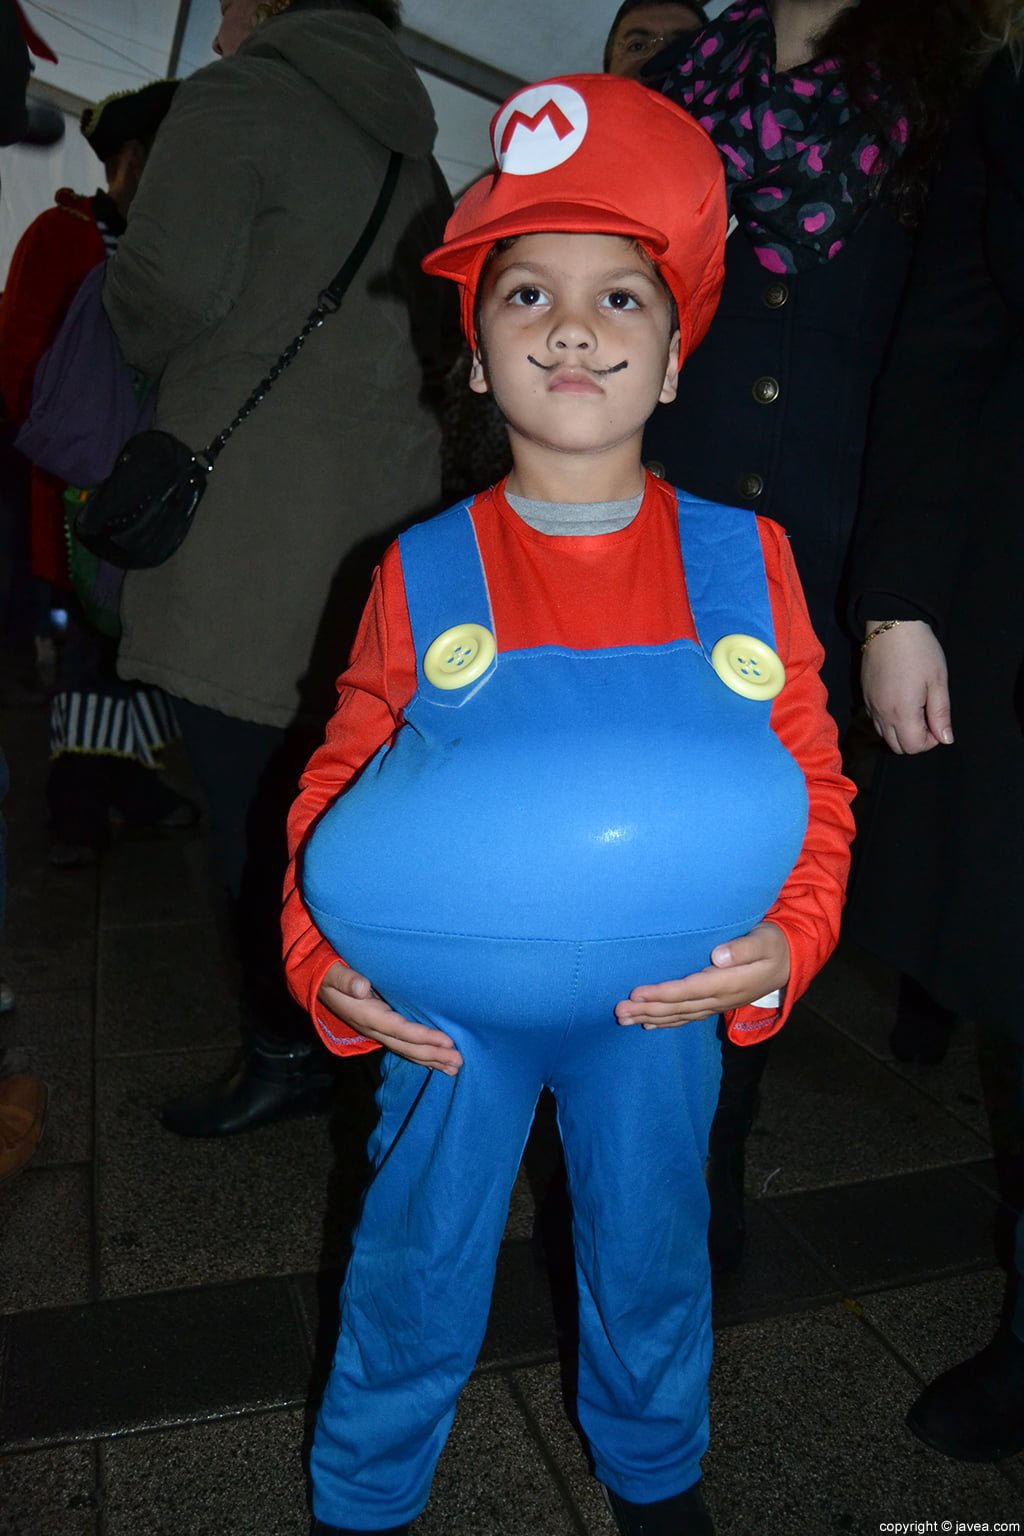 Pequeño disfrazado de Mario Bros en el carnaval infantil de Jávea